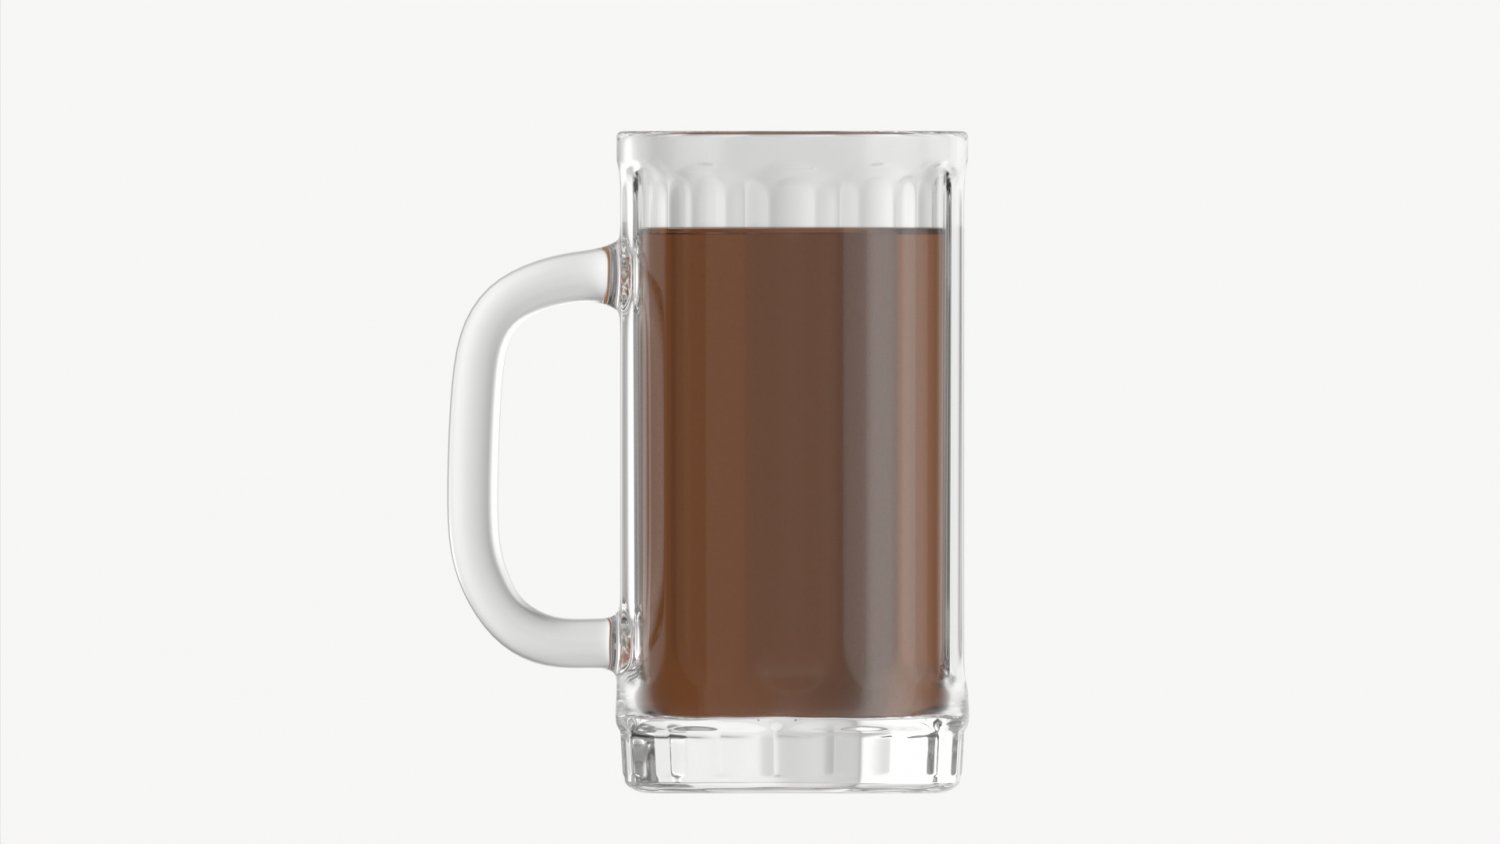 Blender Mug, FREE 3D Beverage models